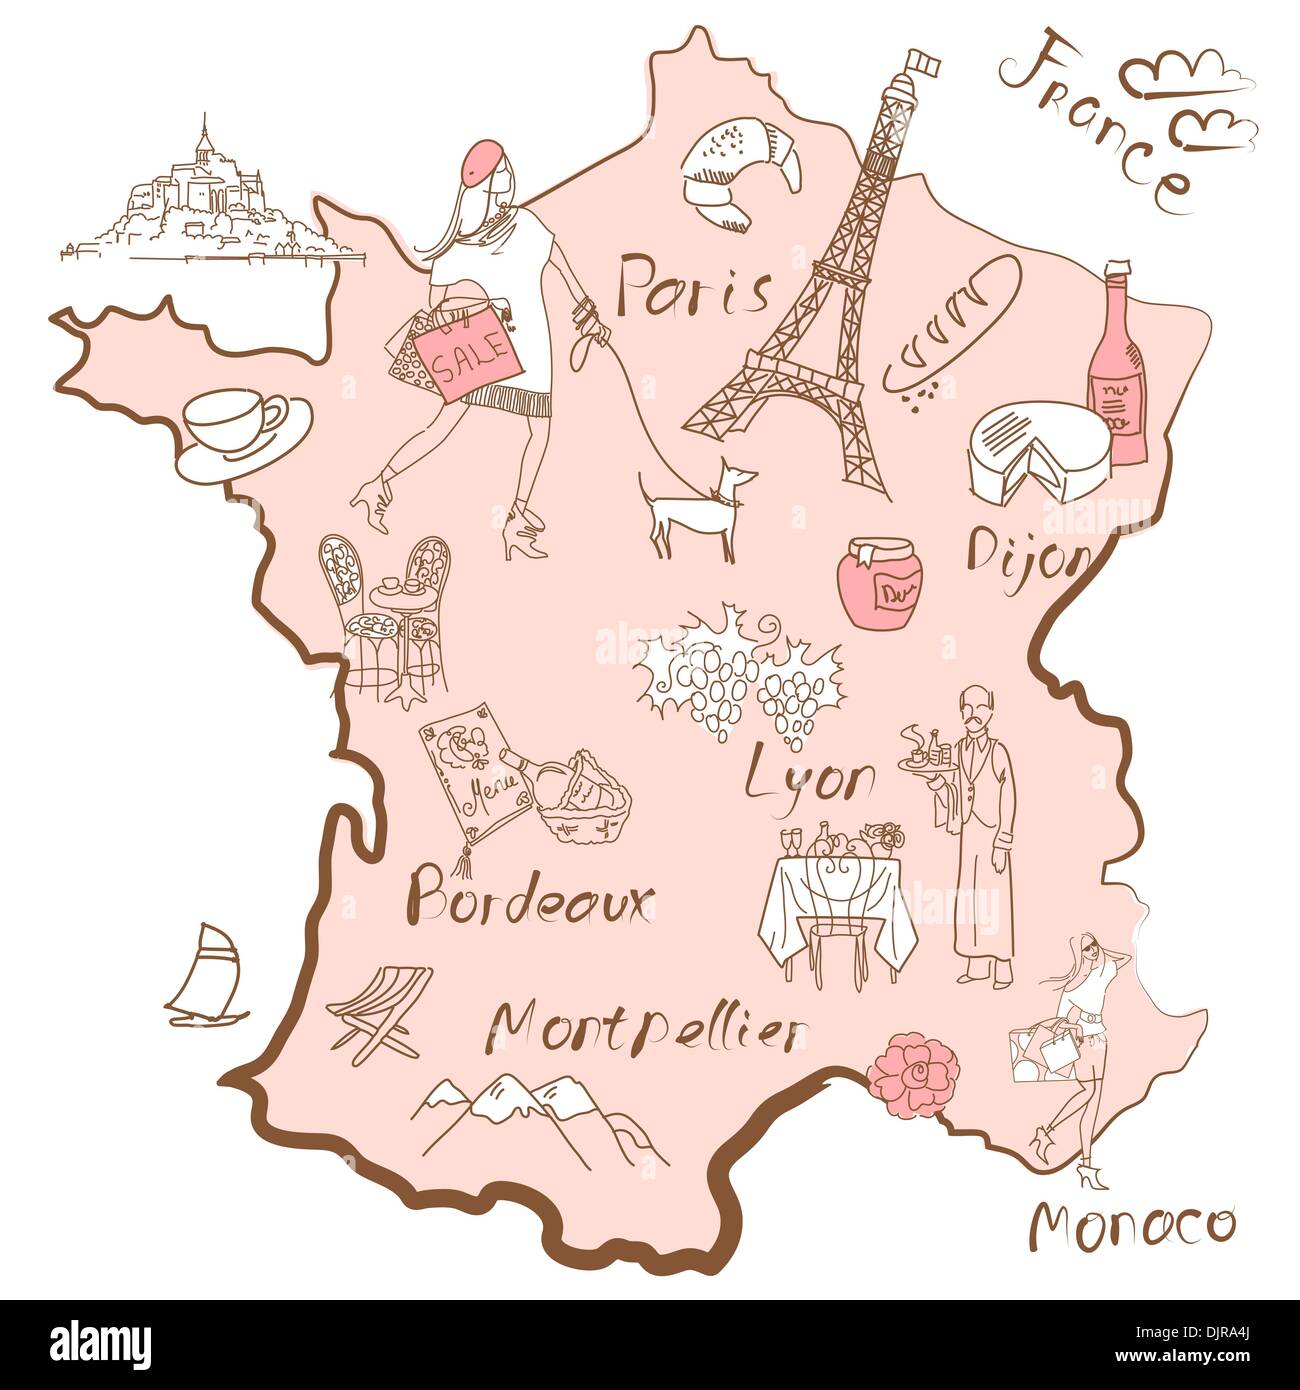 Stilisierte Landkarte von Frankreich. Dinge, denen verschiedene Regionen Frankreichs berühmt sind. Stock Vektor